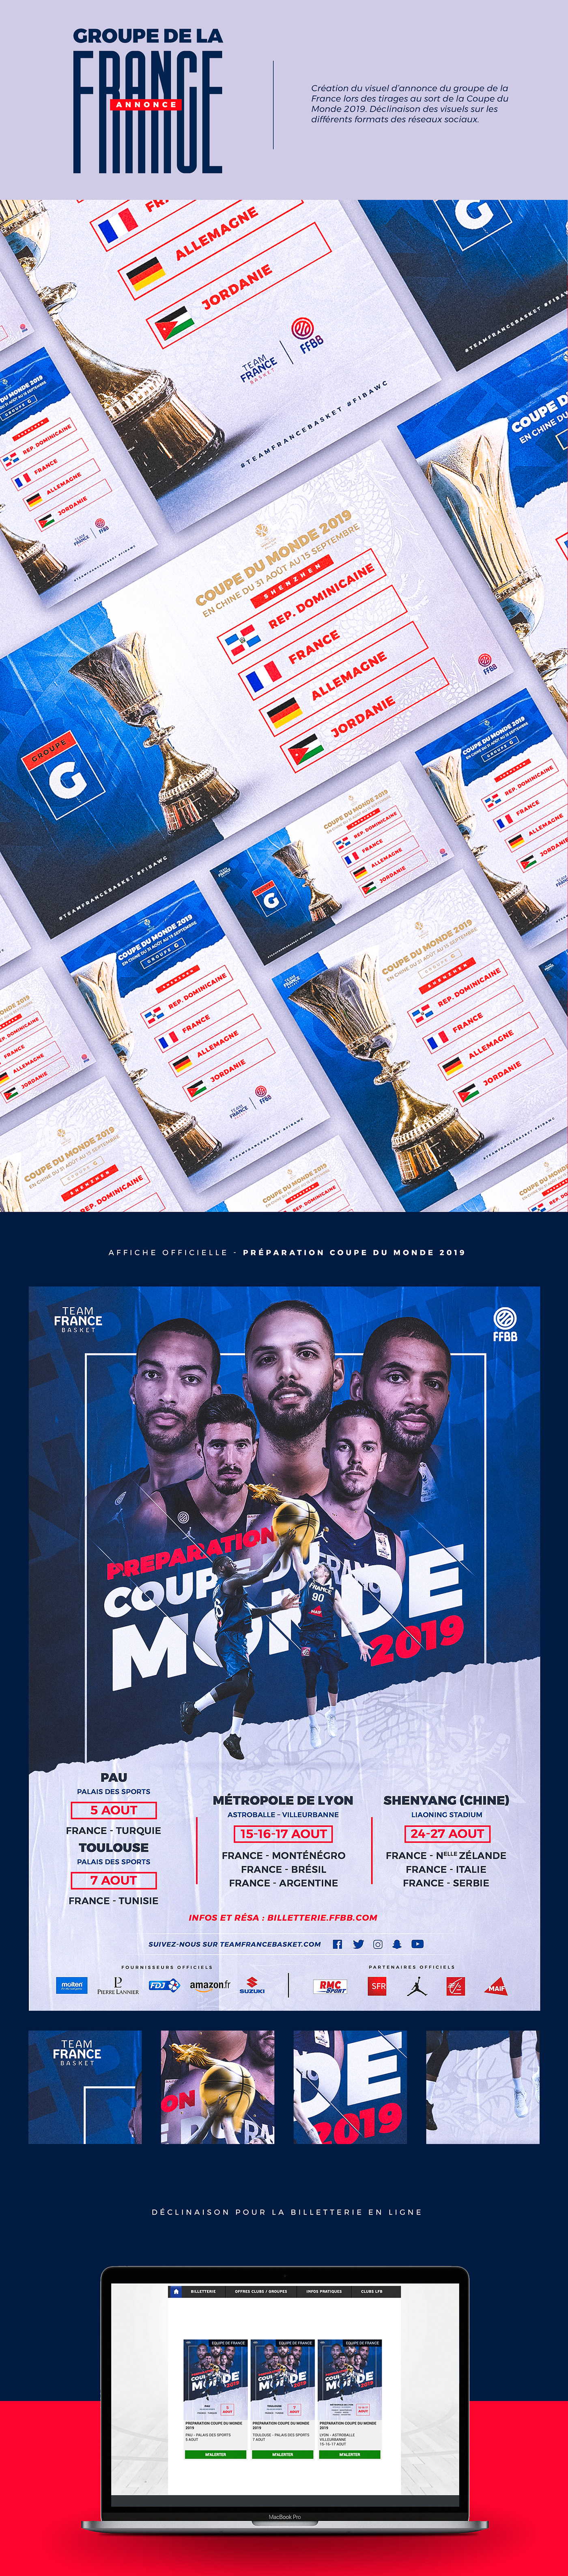 basket basketball Equipe de France direction artistique france sport world cup coupe du monde